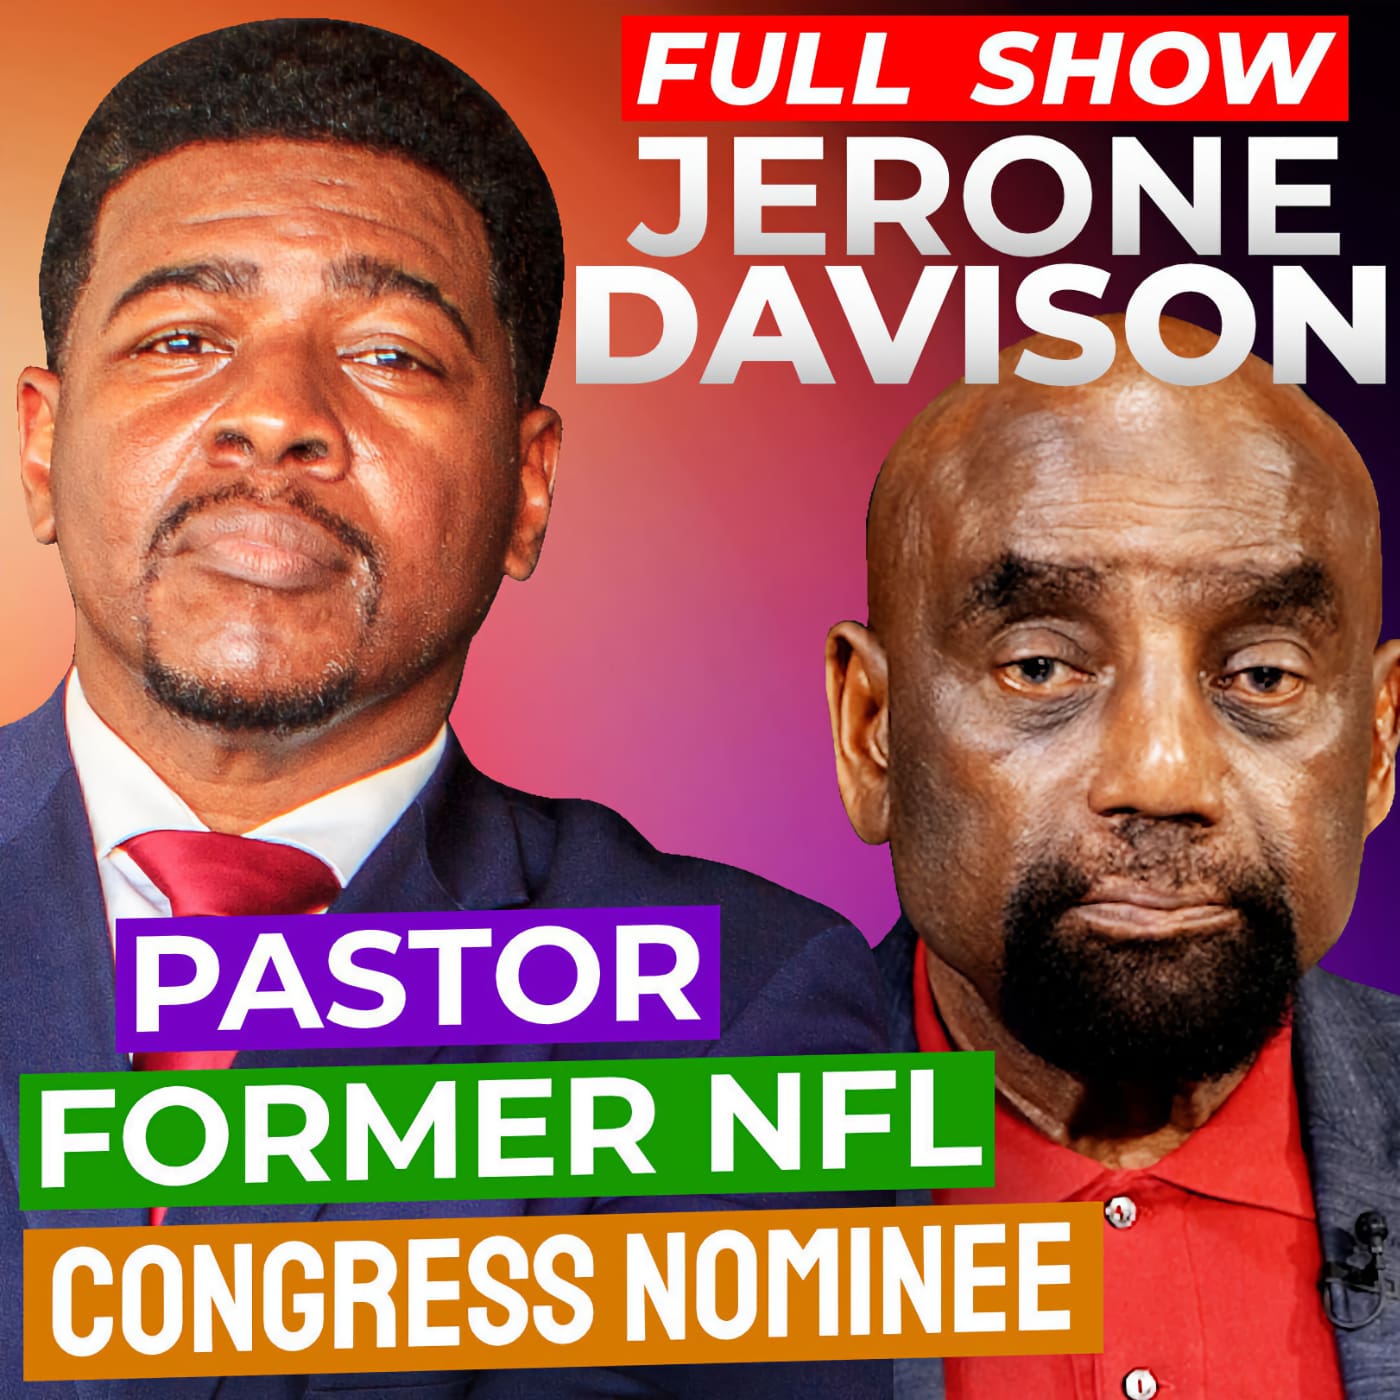 Former NFL Player turned Pastor, Jerone Davison Joins Jesse! (#337)